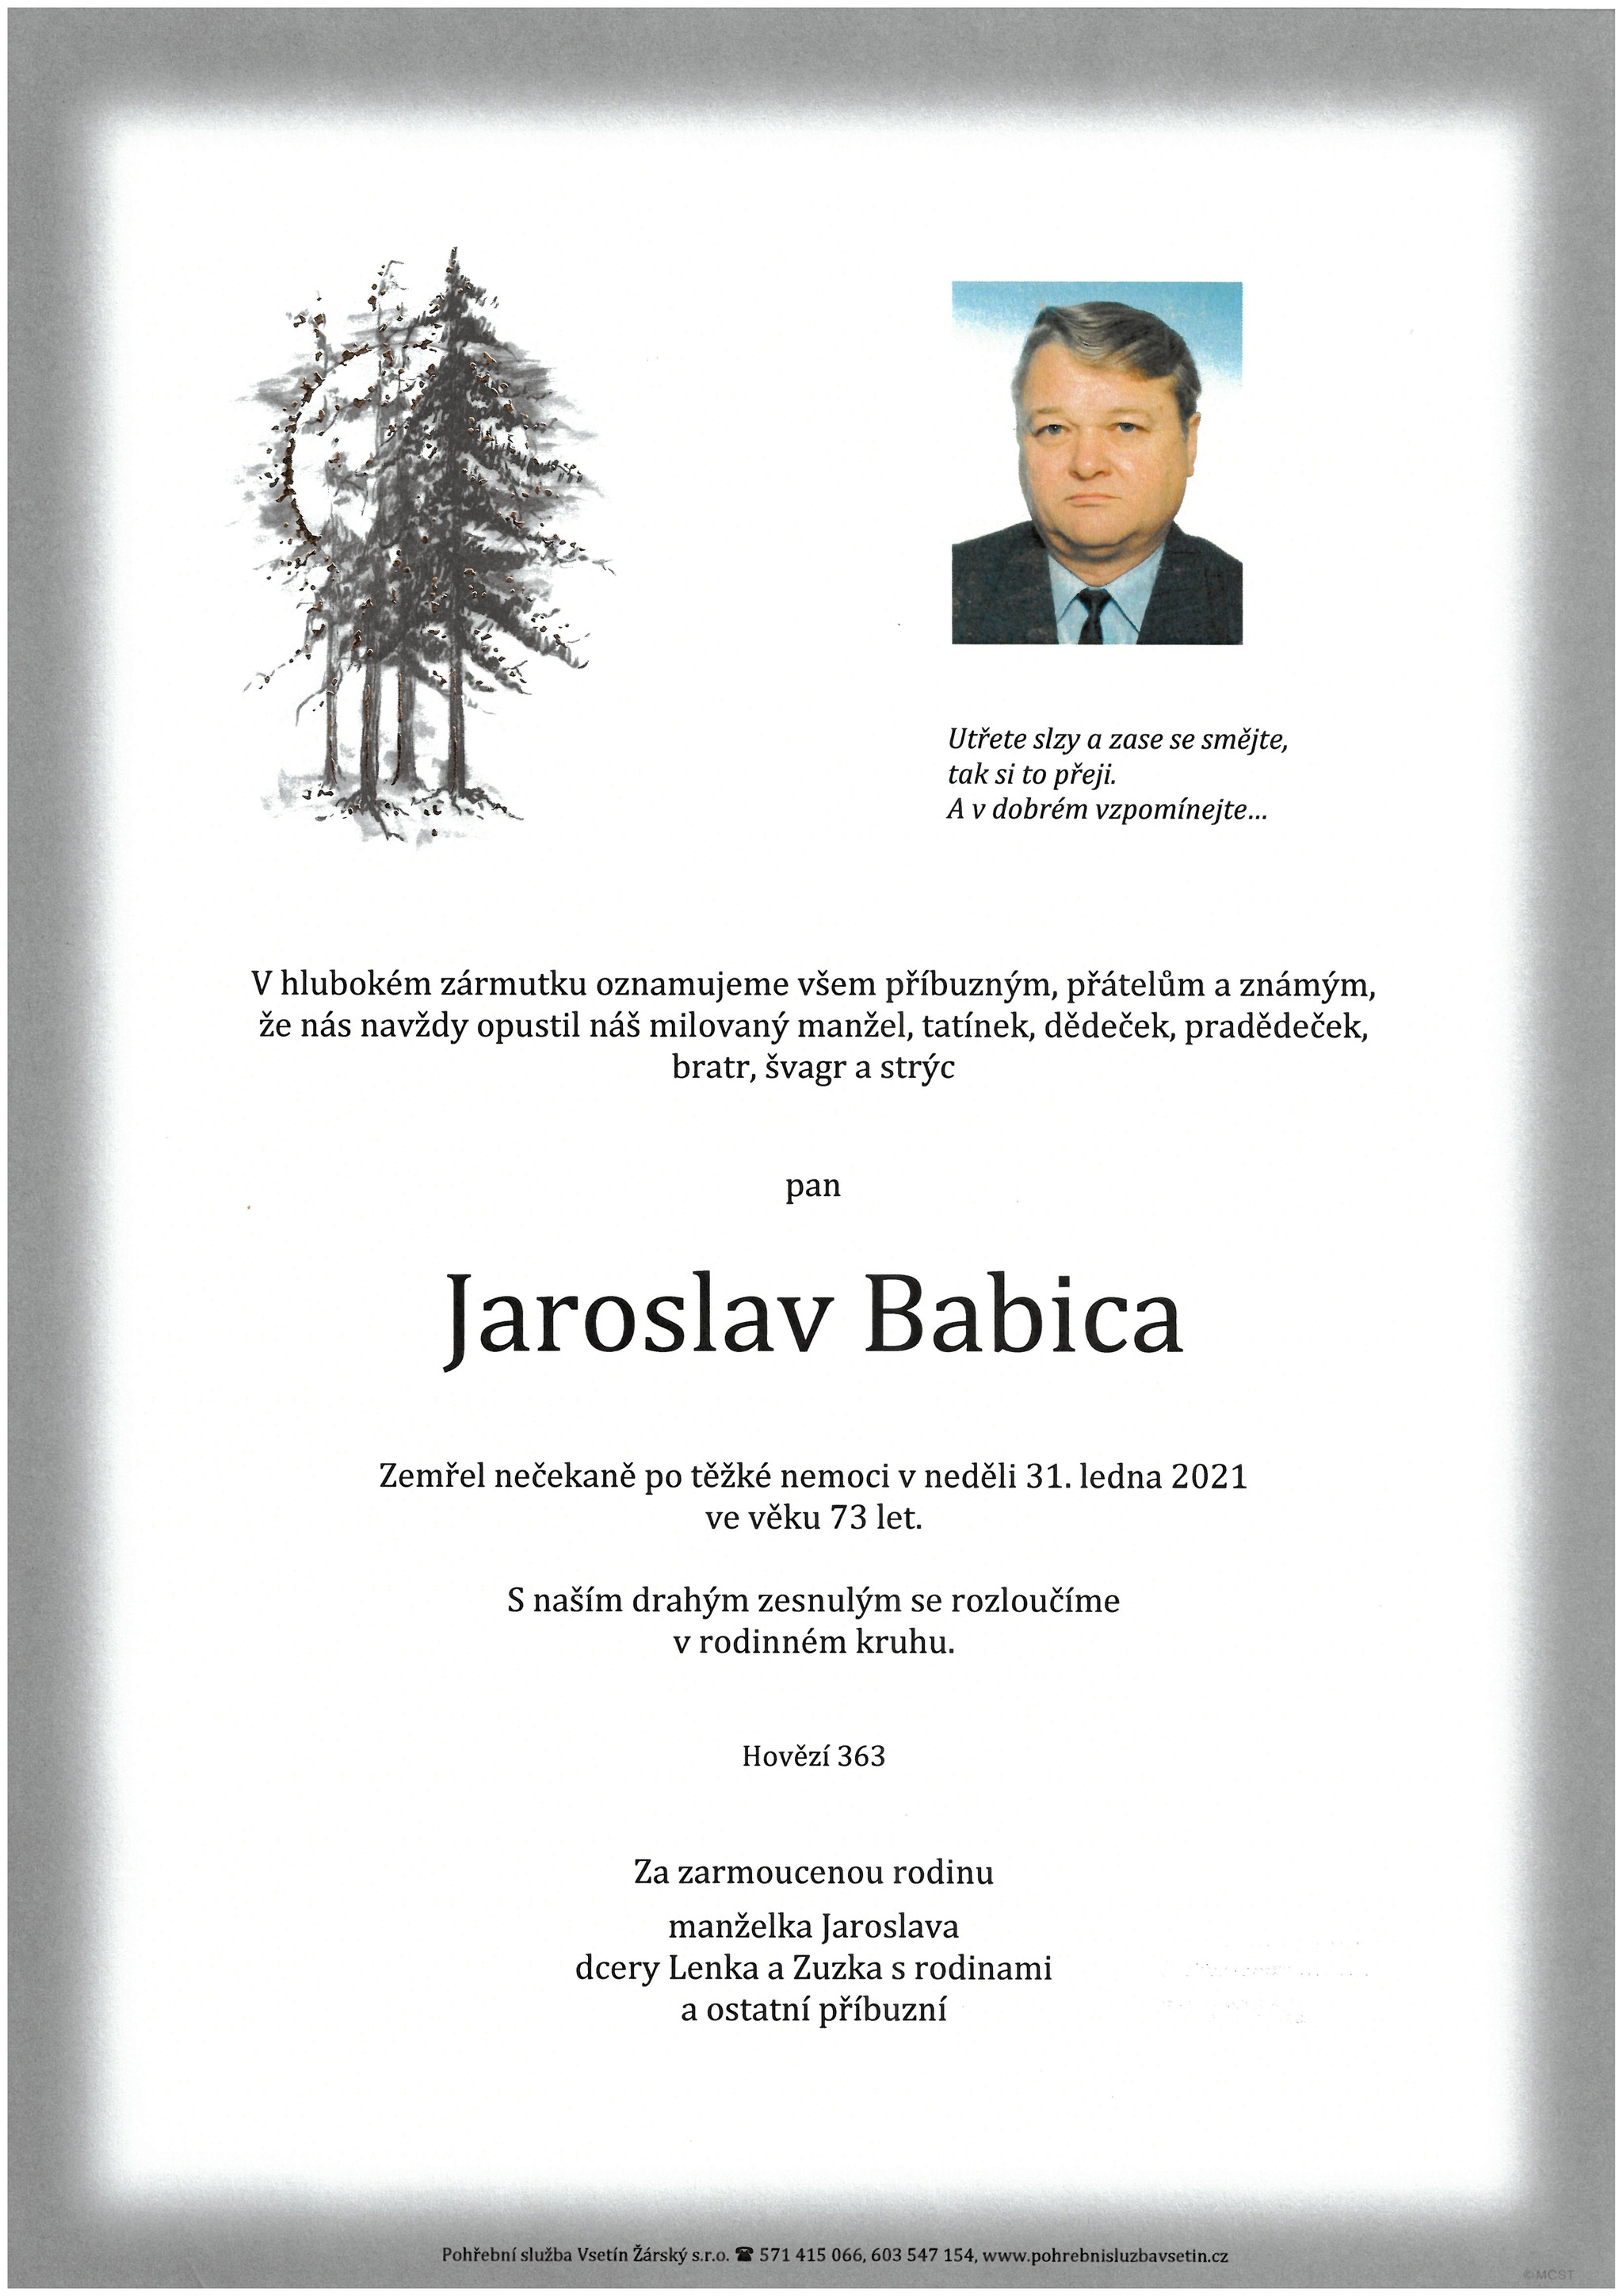 Jaroslav Babica